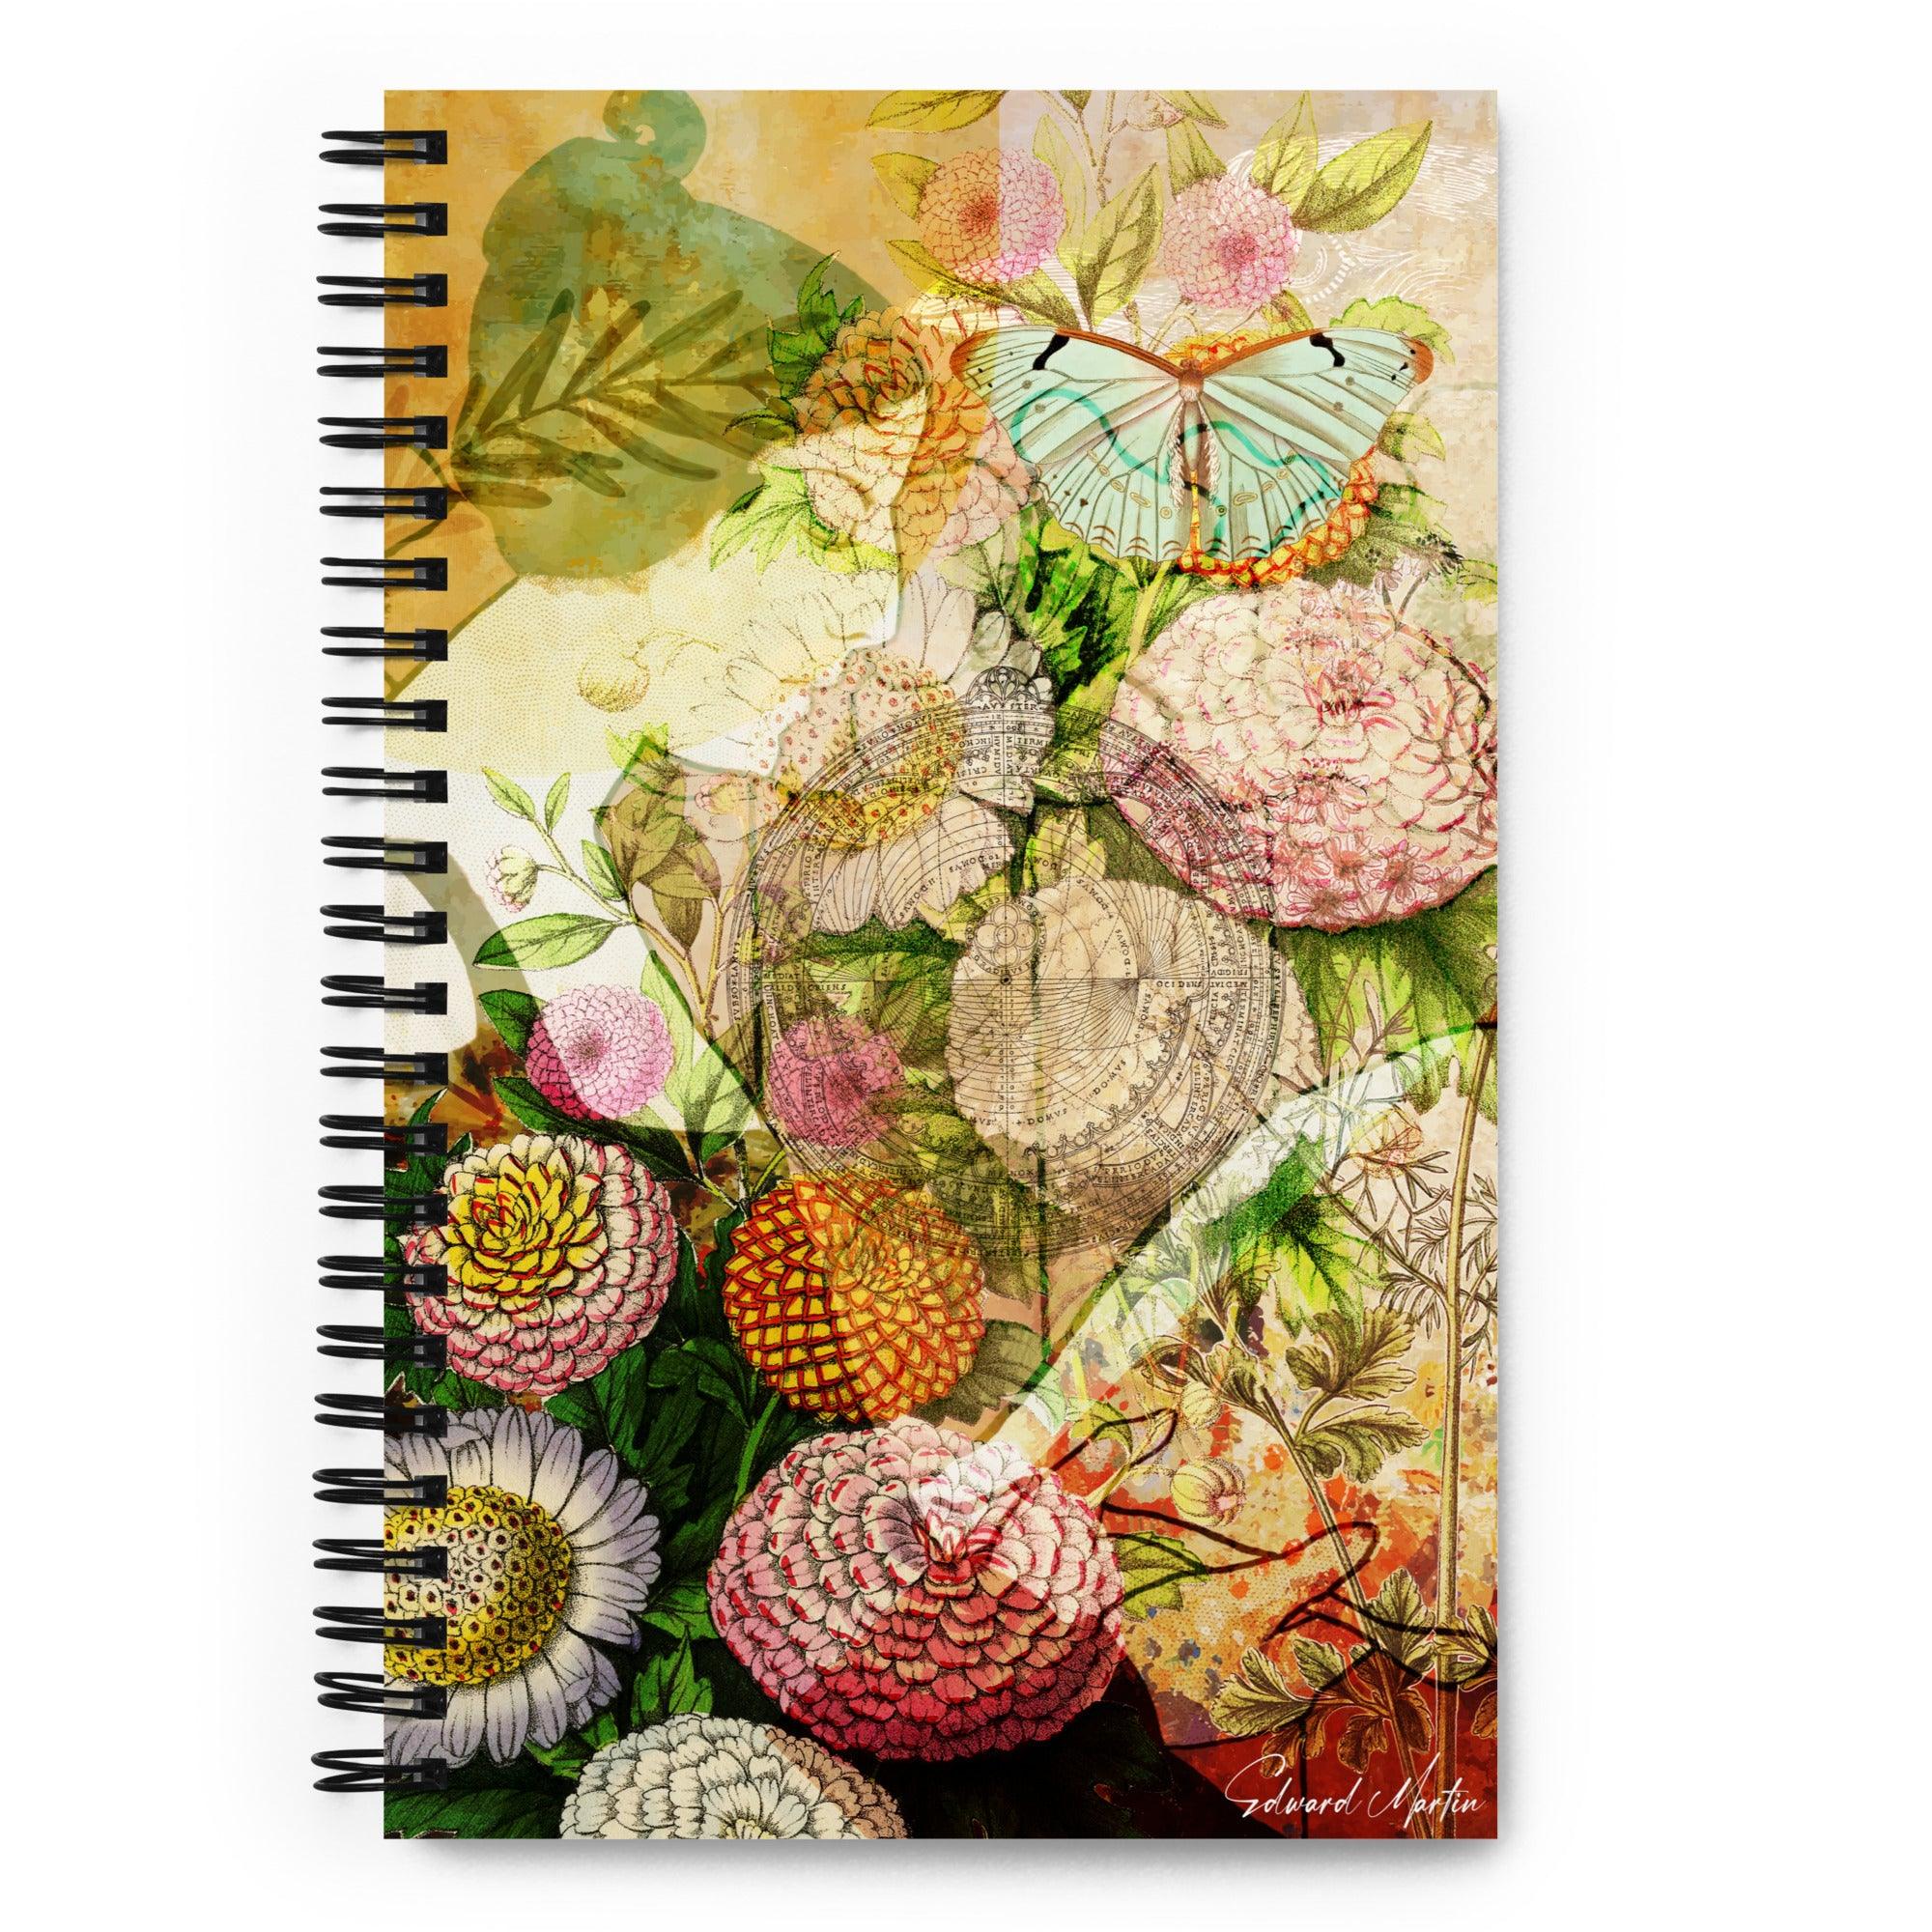 Spiral notebook-Book in the Garden by Edward Martin - Elementologie